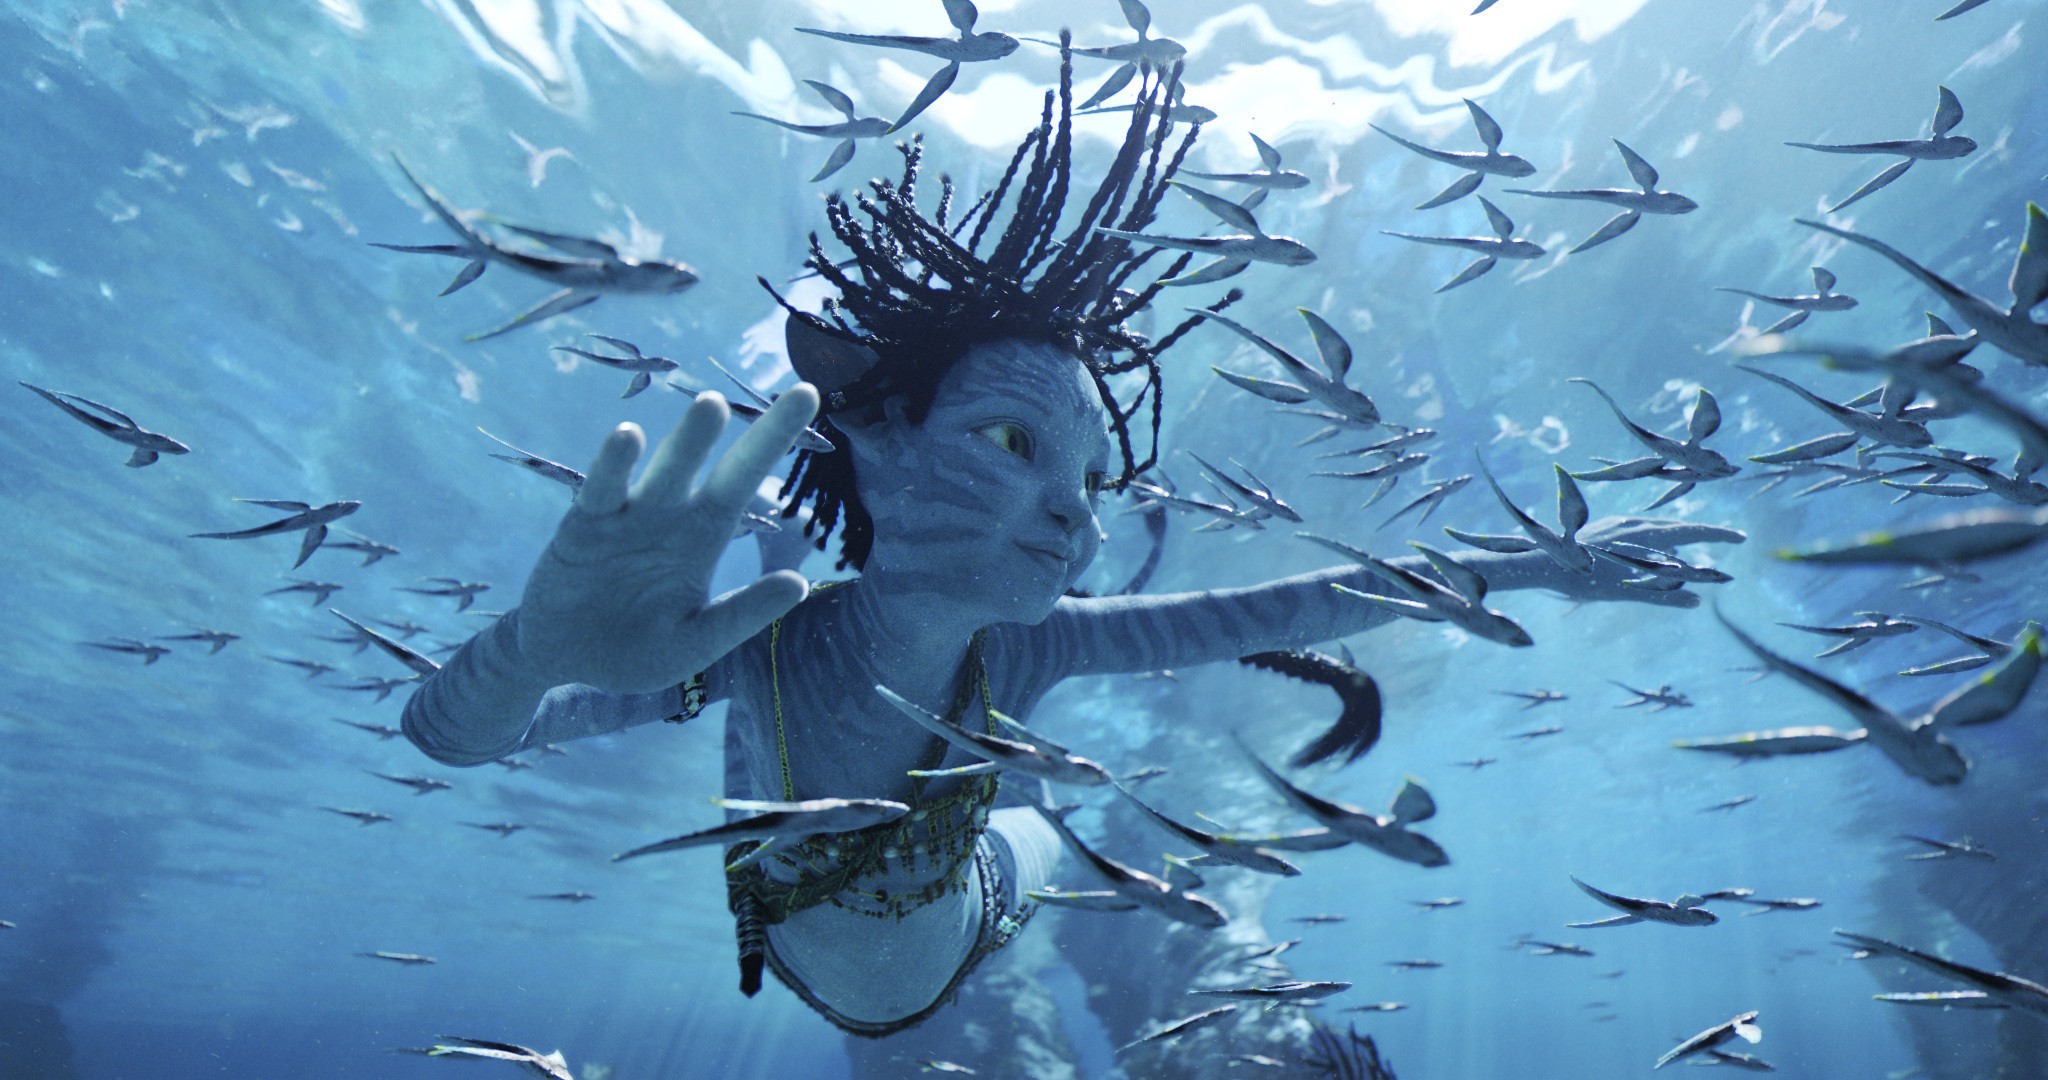 Uma criança Na'vi de pele azul nada debaixo d'água em uma cena de Avatar: The Way of Water.